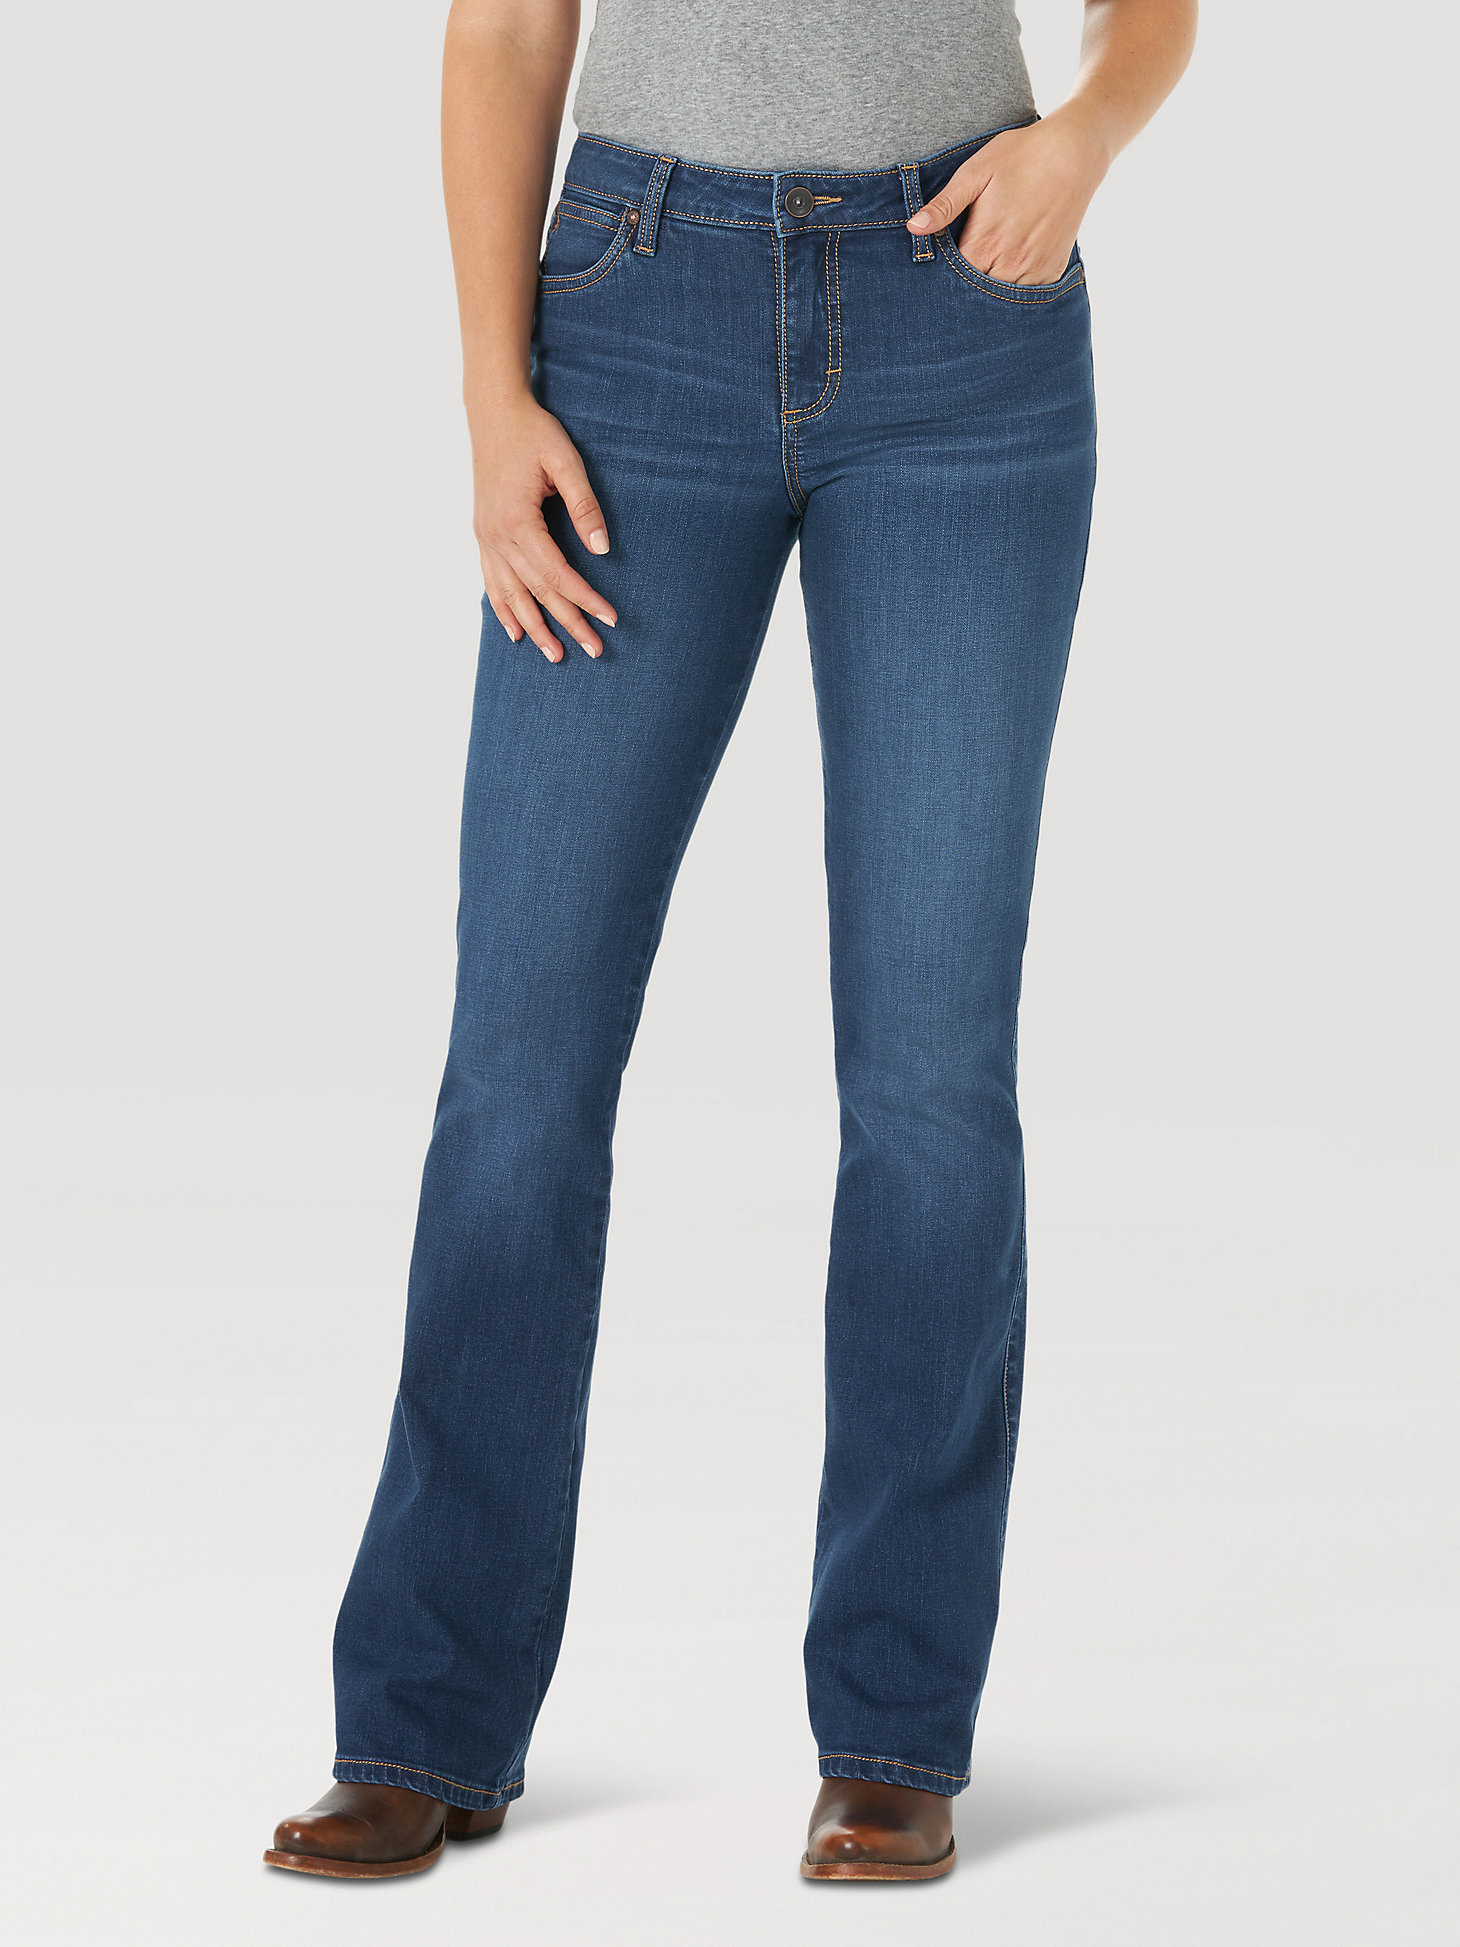 Wrangler Womens Aura Instantly Slimming Jean